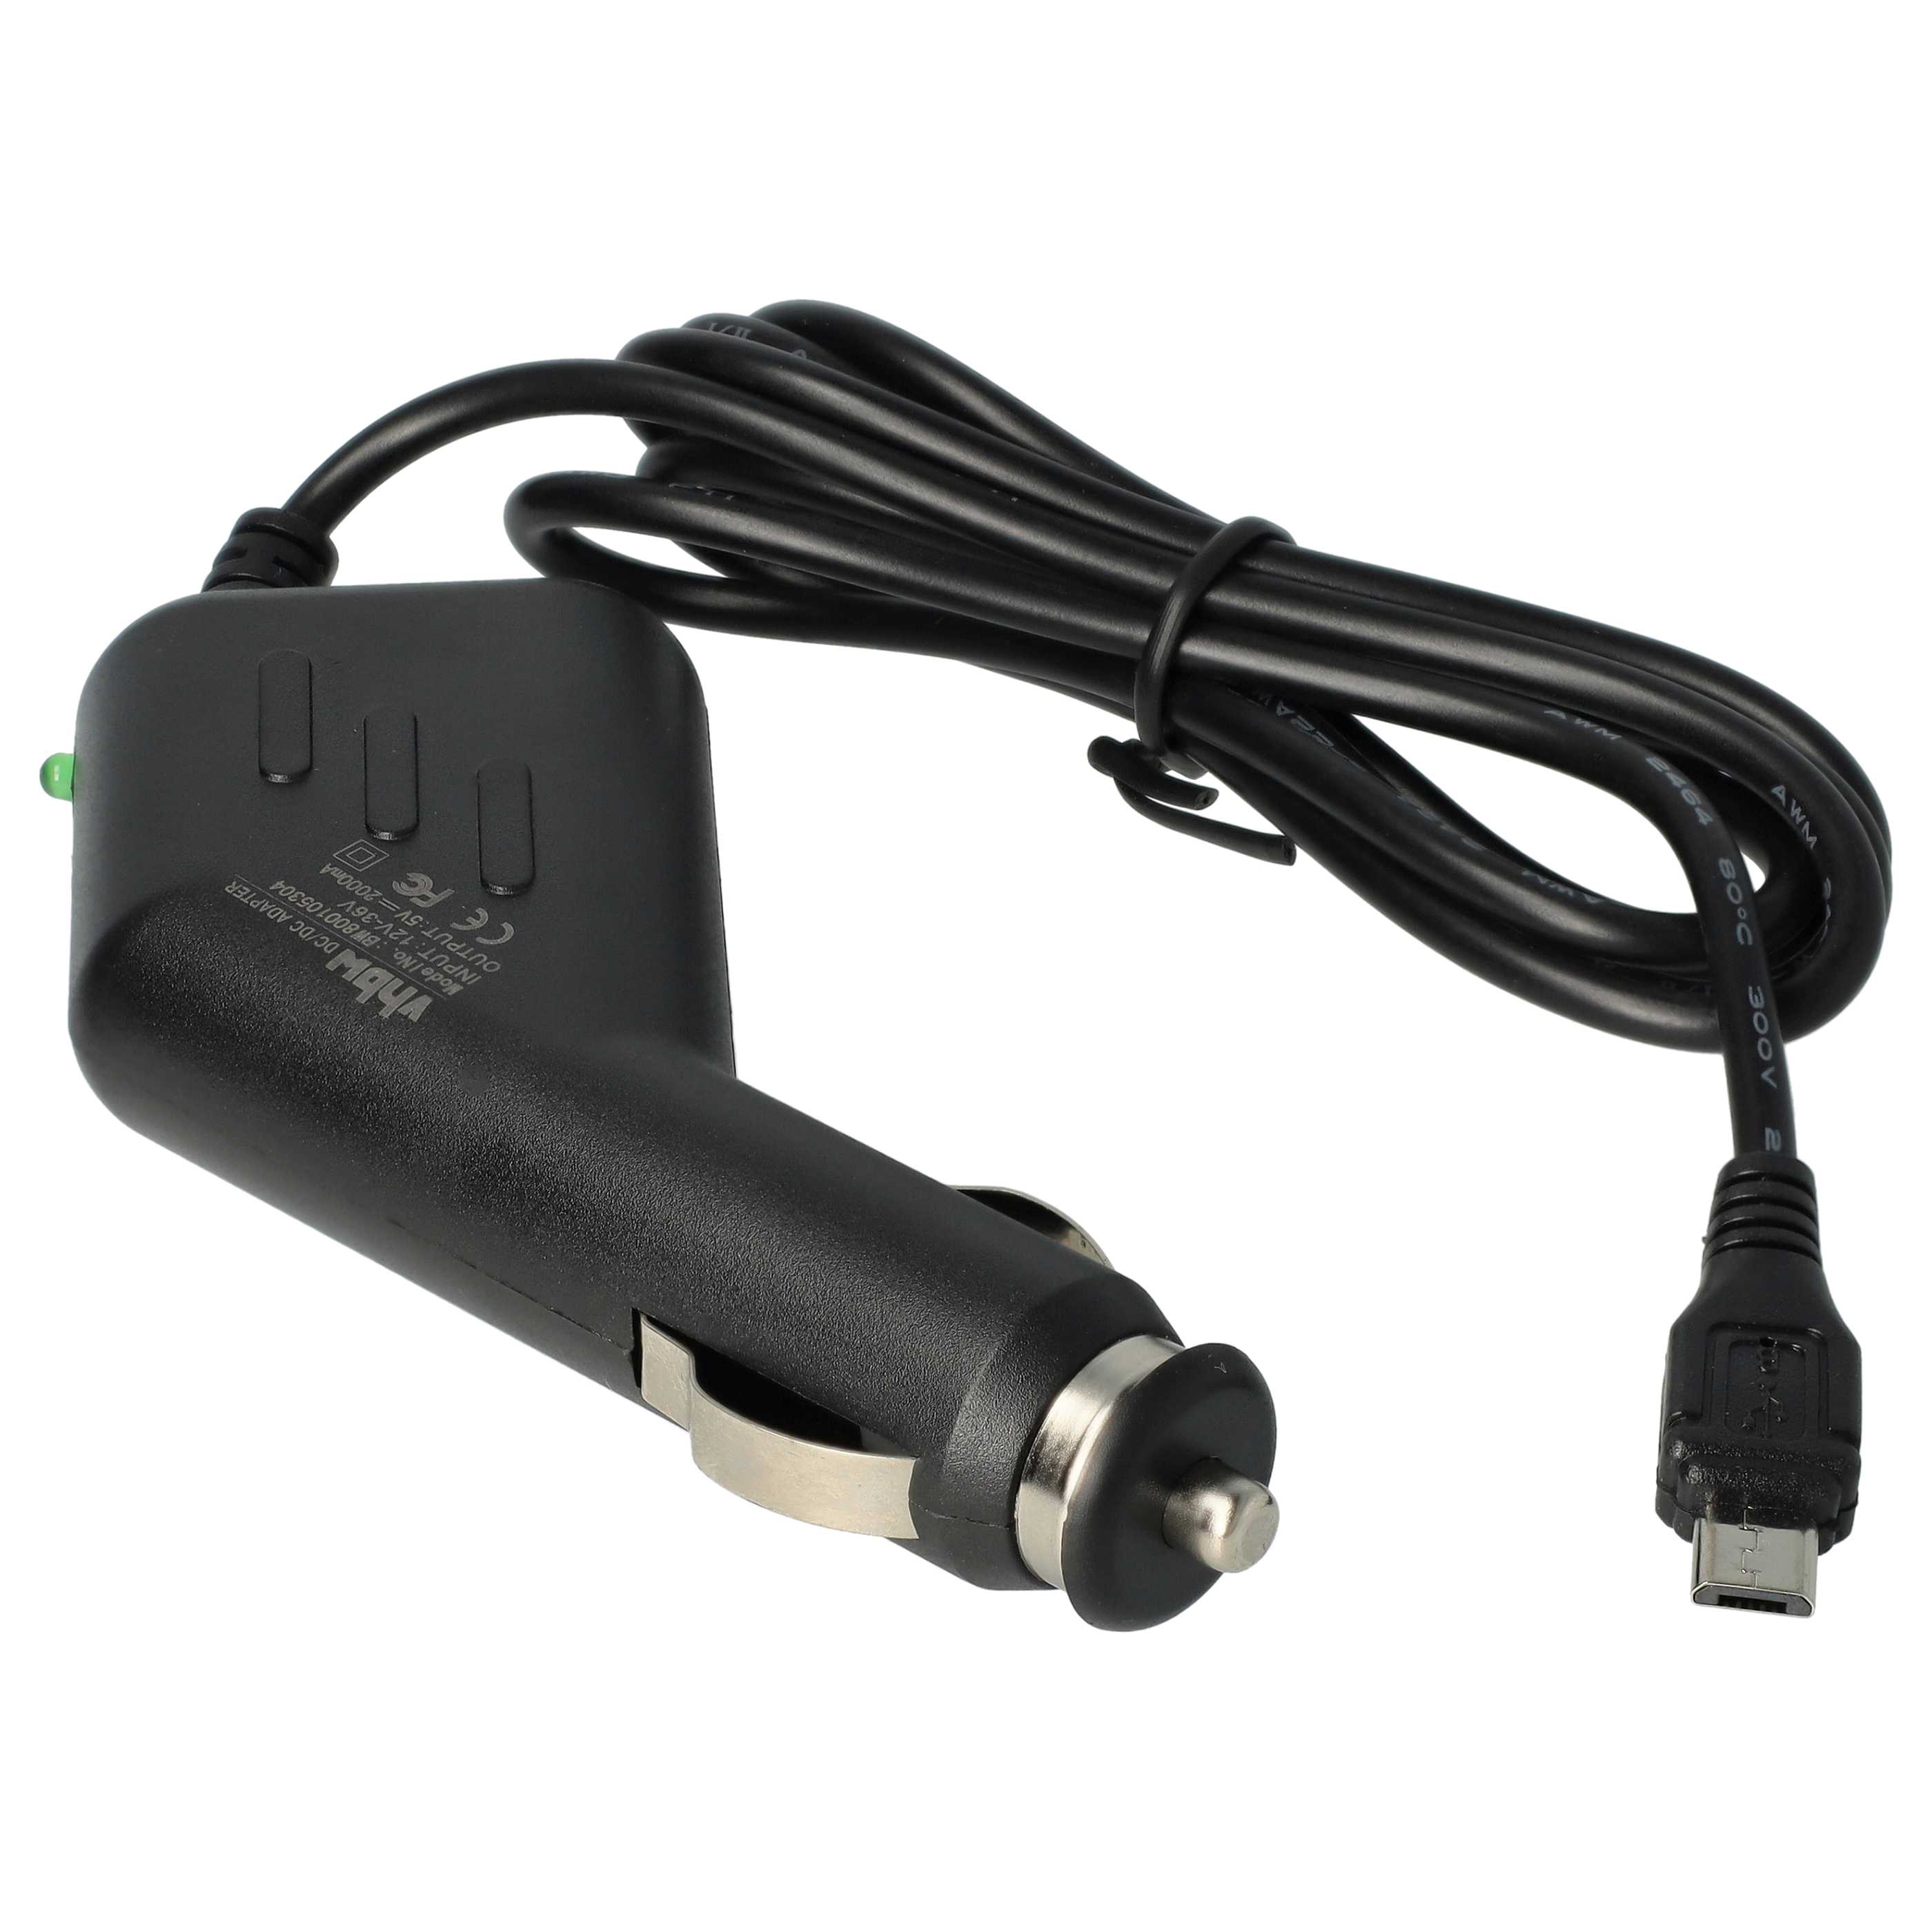 Caricatore per auto micro-USB 2,0 A per dispositivi come smartphone, GPS, navigatore Olympia ecc.